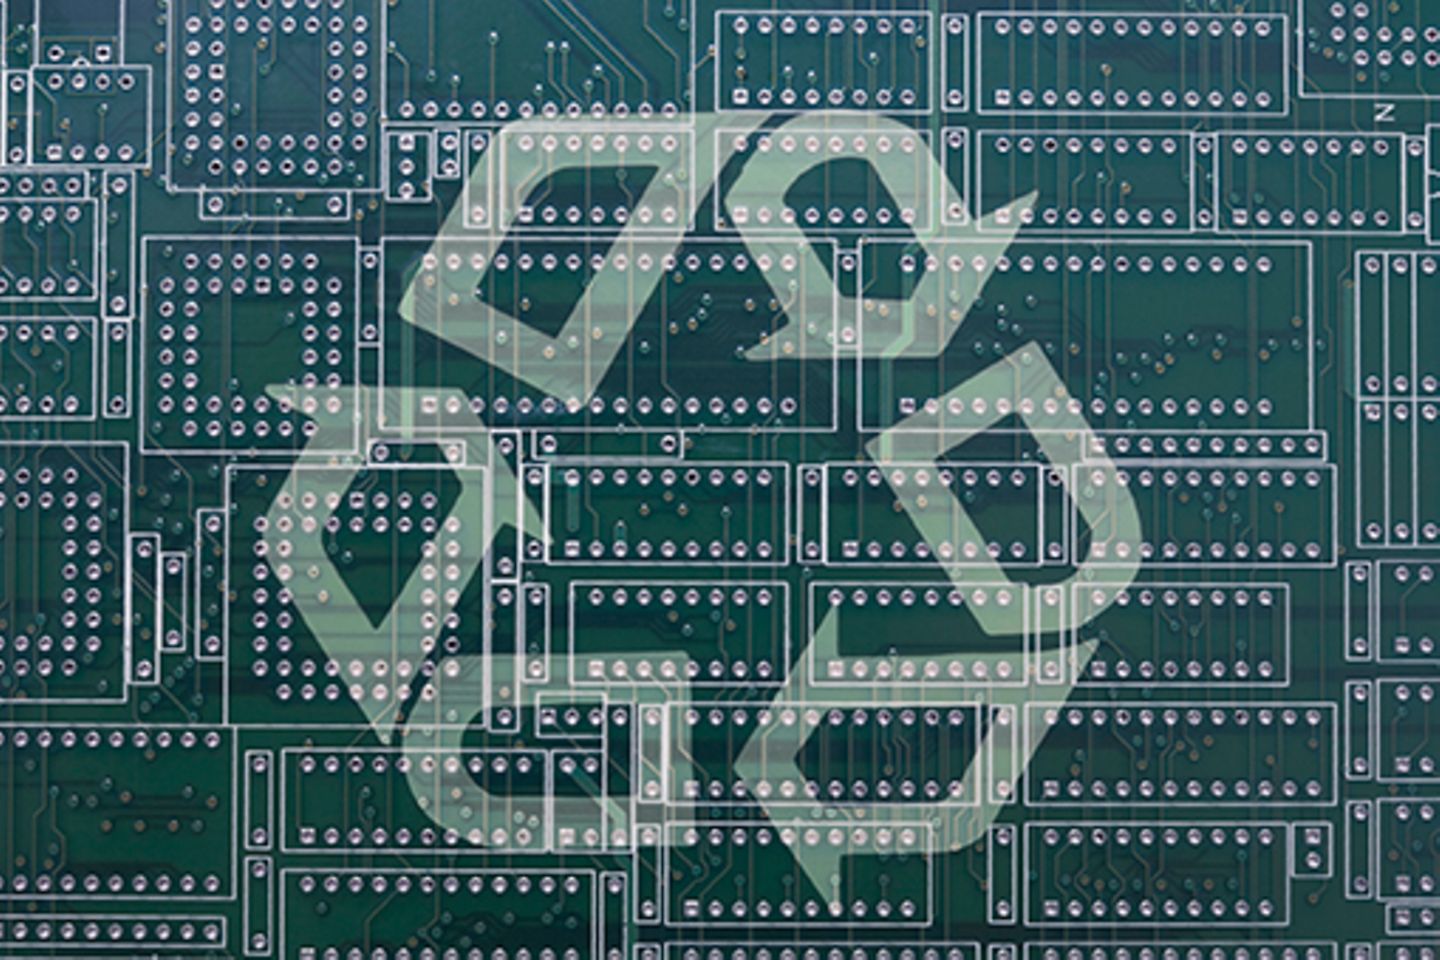 Bild einer Computerplatine mit einem darüber gelegten Recycling-Zeichen